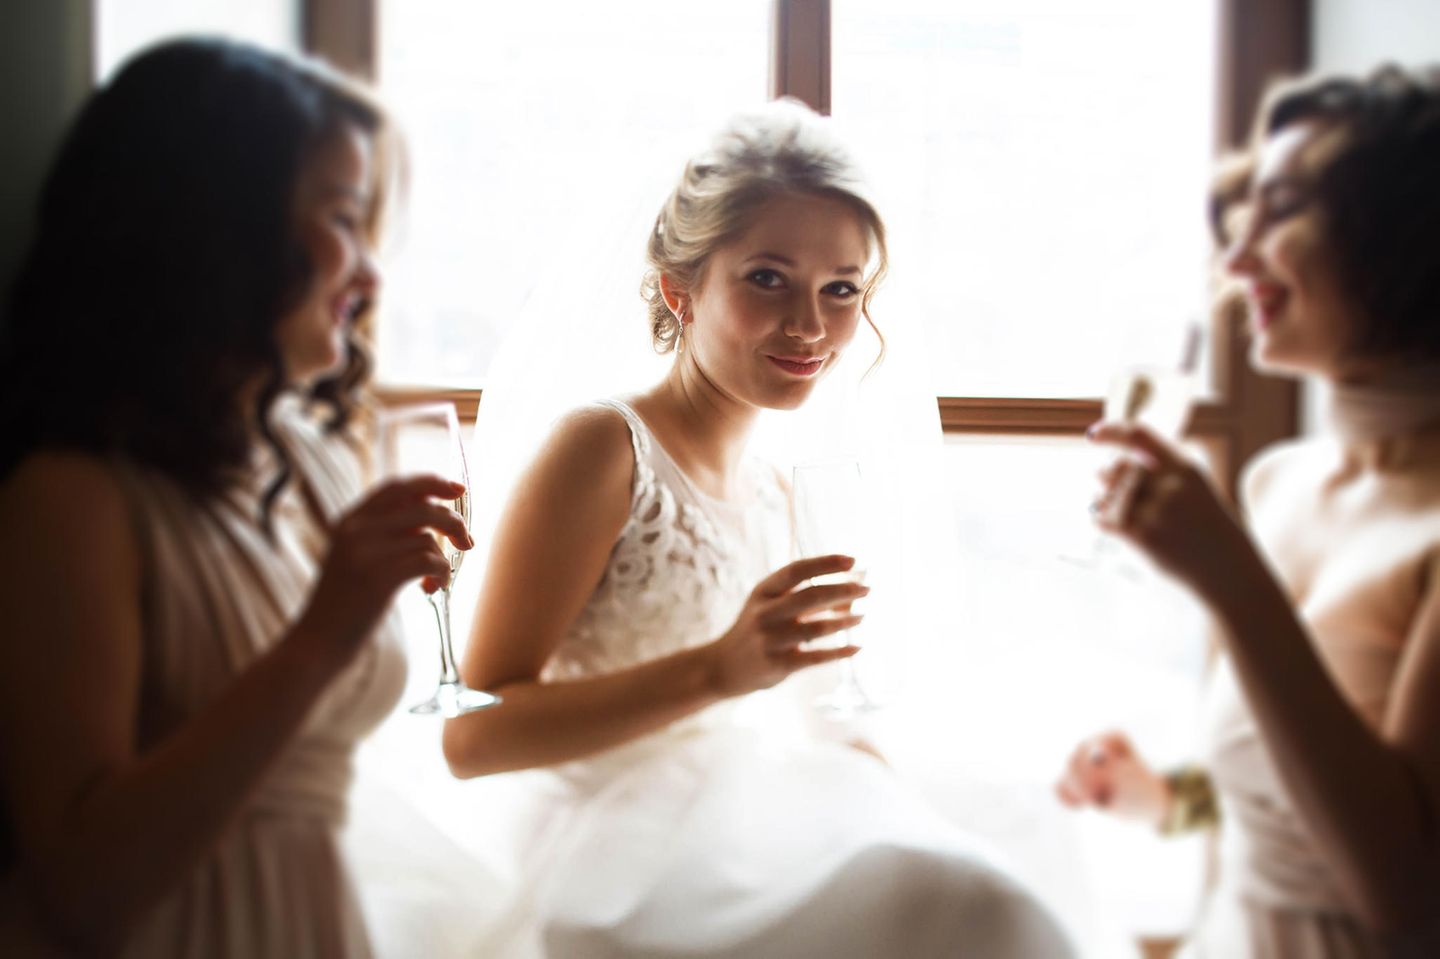 Braut-Knigge: 10 Dinge, die du an deinem Hochzeitstag vermeiden solltest